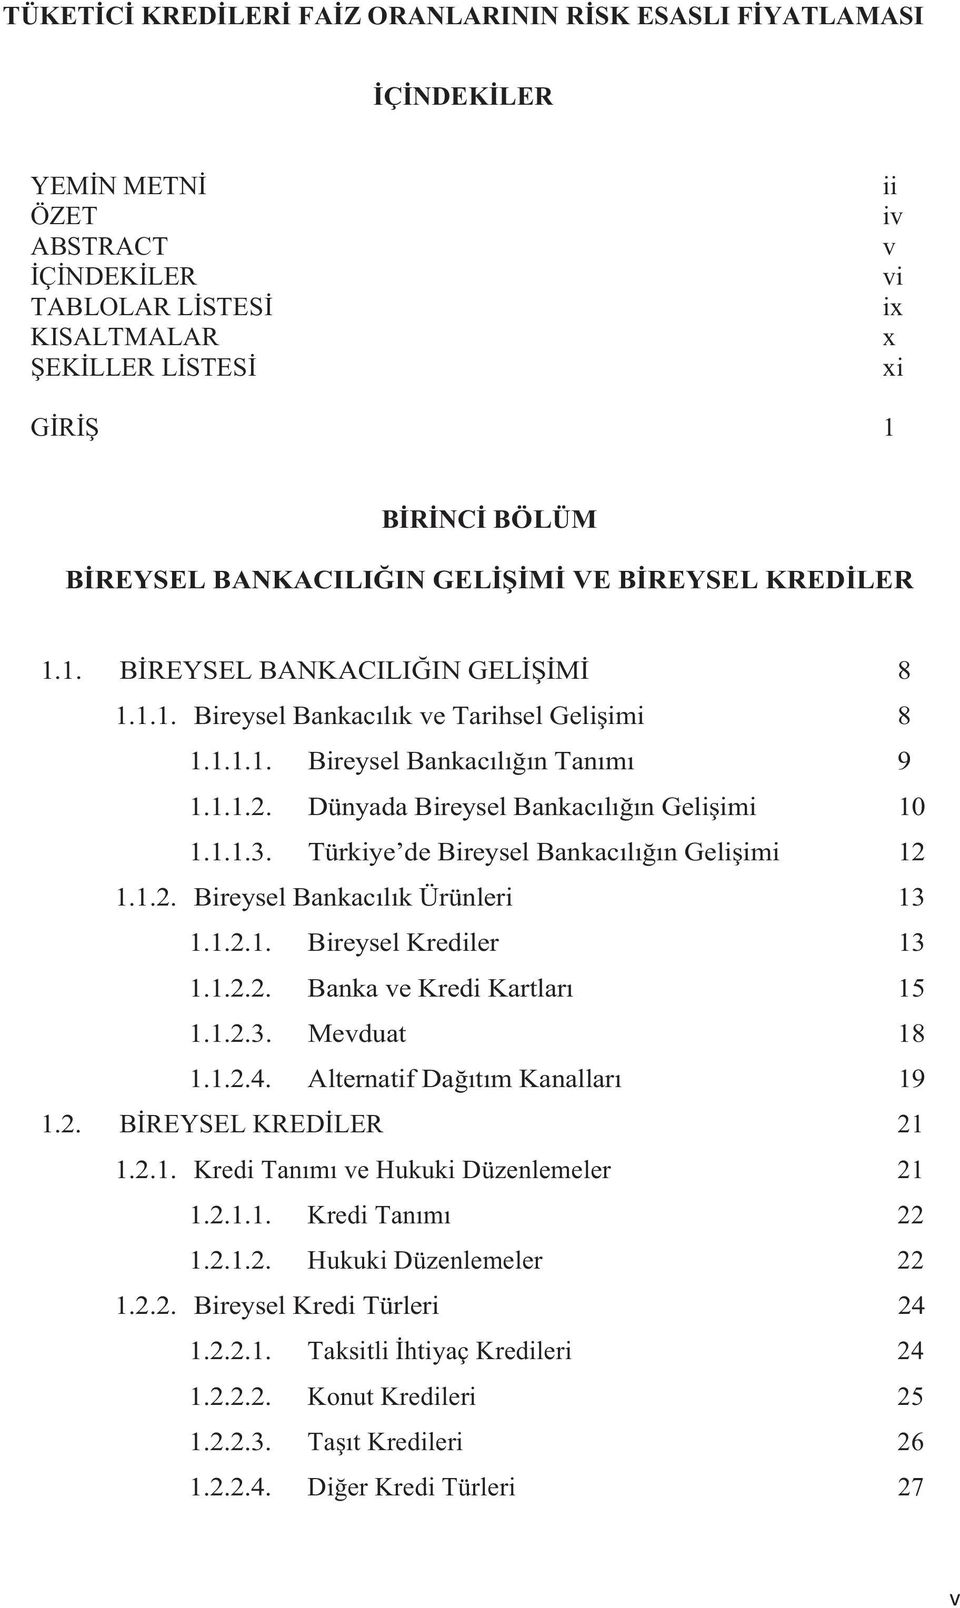 Türkiye de Bireysel Bankacln Geliimi 12 1.1.2. Bireysel Bankaclk Ürünleri 13 1.1.2.1. Bireysel Krediler 13 1.1.2.2. Banka ve Kredi Kartlar 15 1.1.2.3. Mevduat 18 1.1.2.4.